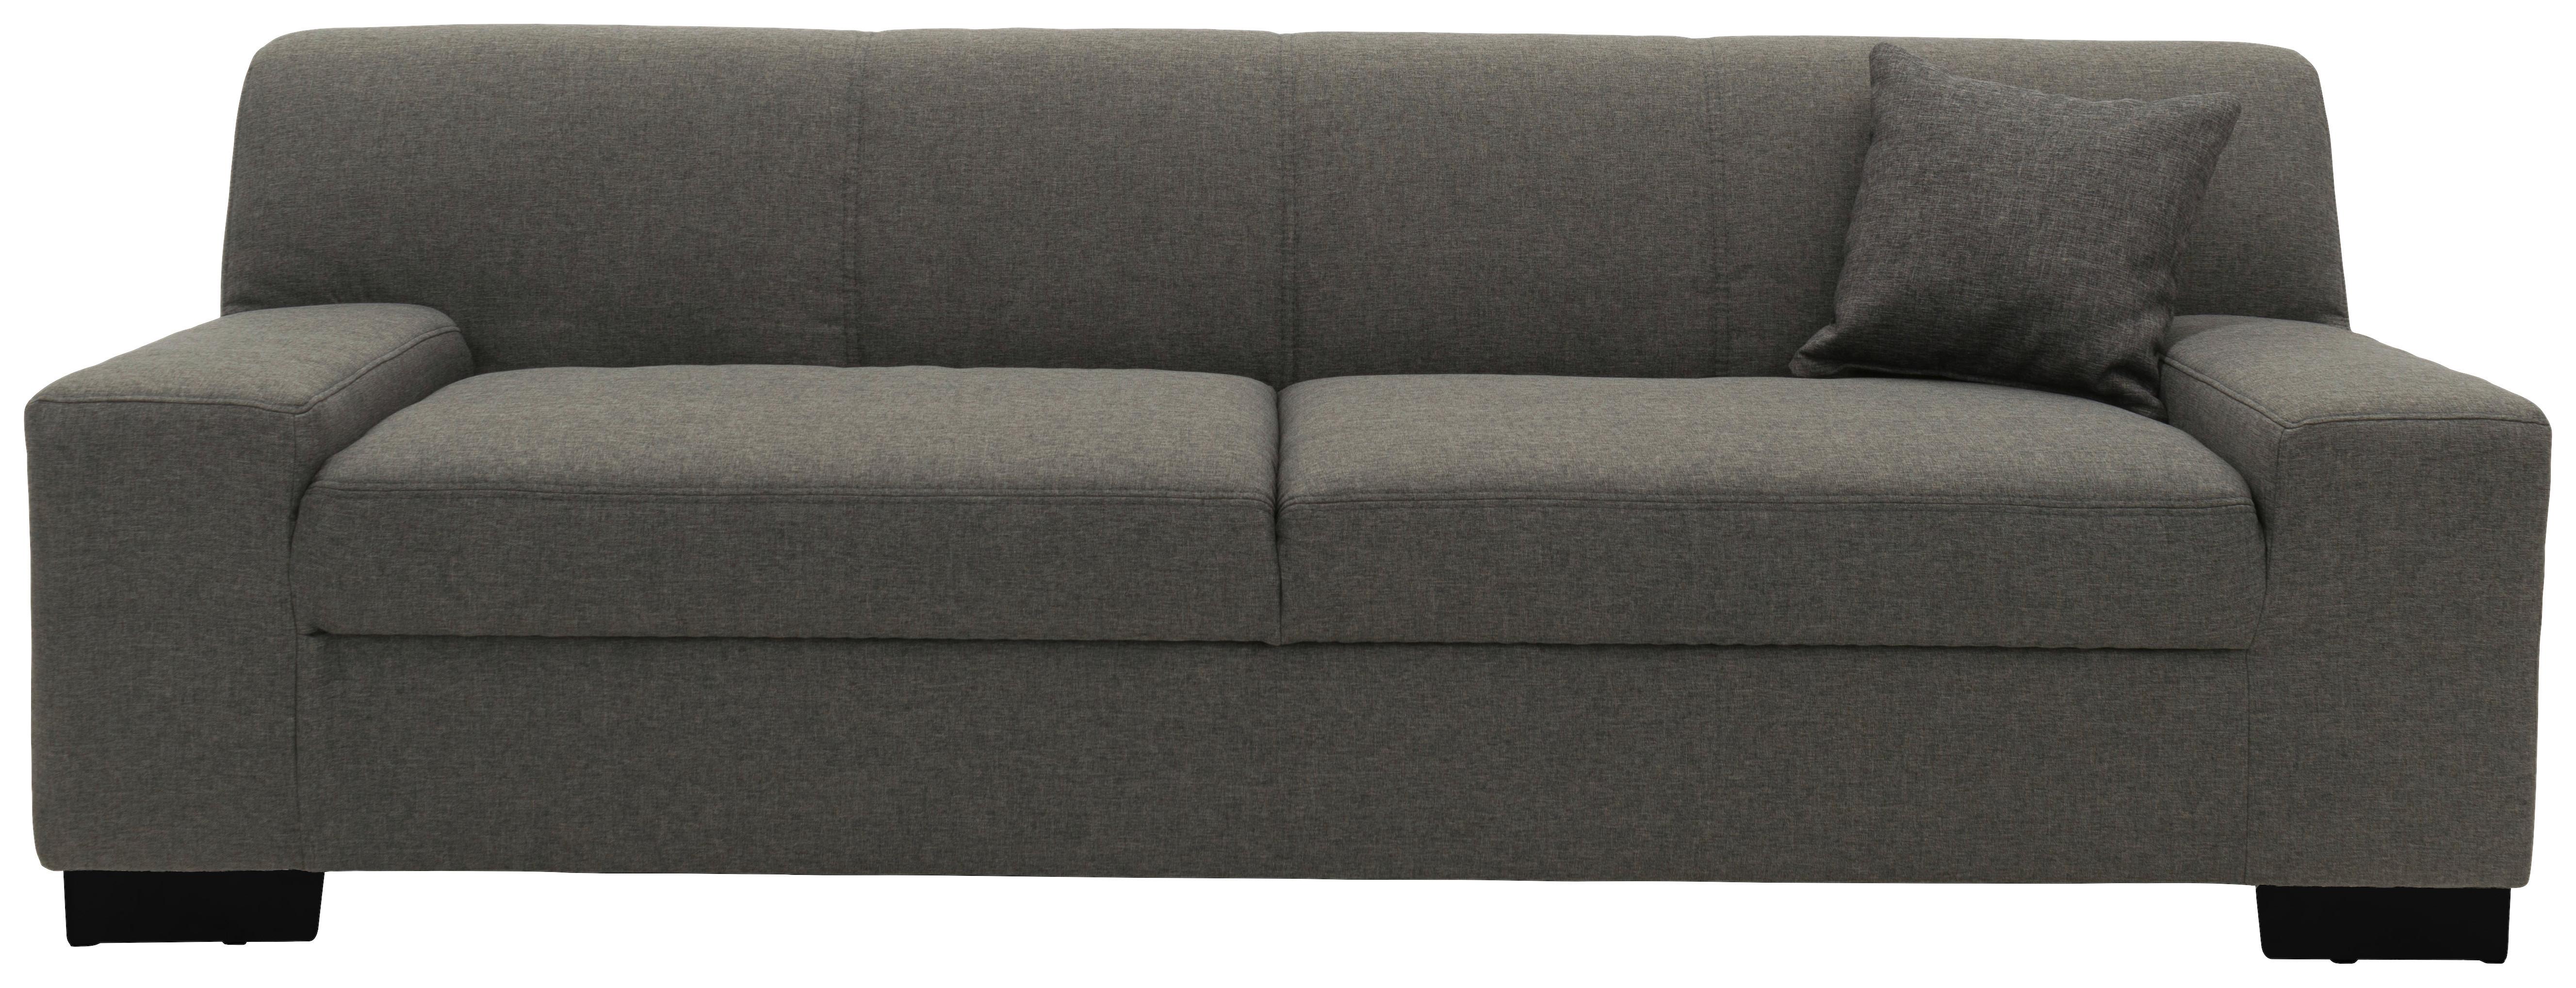 2-Sitzer-Sofa Norma Schwarz/Braun Webstoff - Wengefarben/Schwarz, Design, Textil (194/74/85cm)